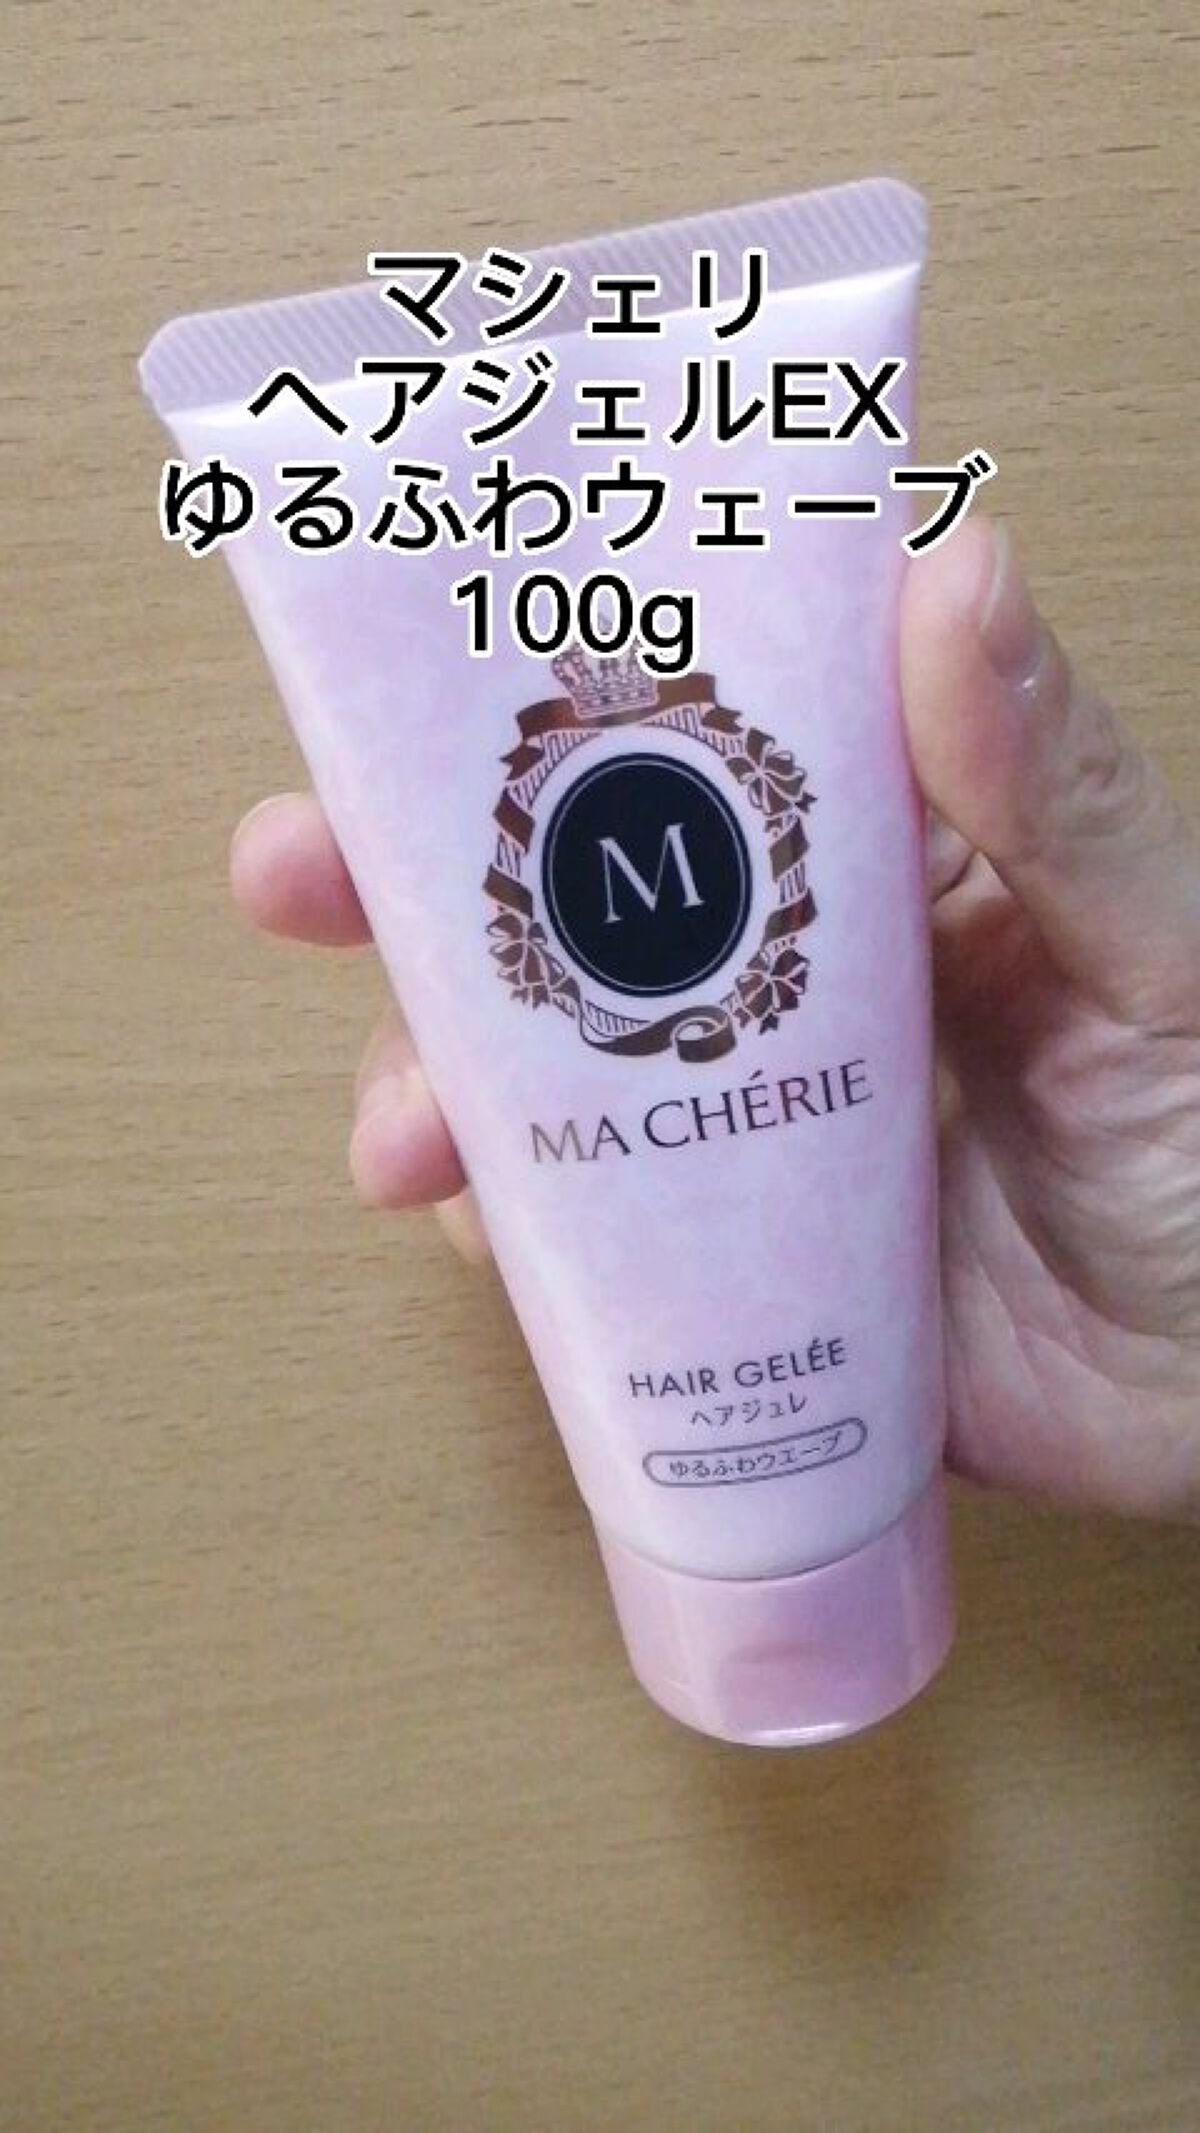 日本最大のブランド MACHE'RIE(マシェリ) ヘアジュレEX ゆるふわウエーブ スタイリング剤